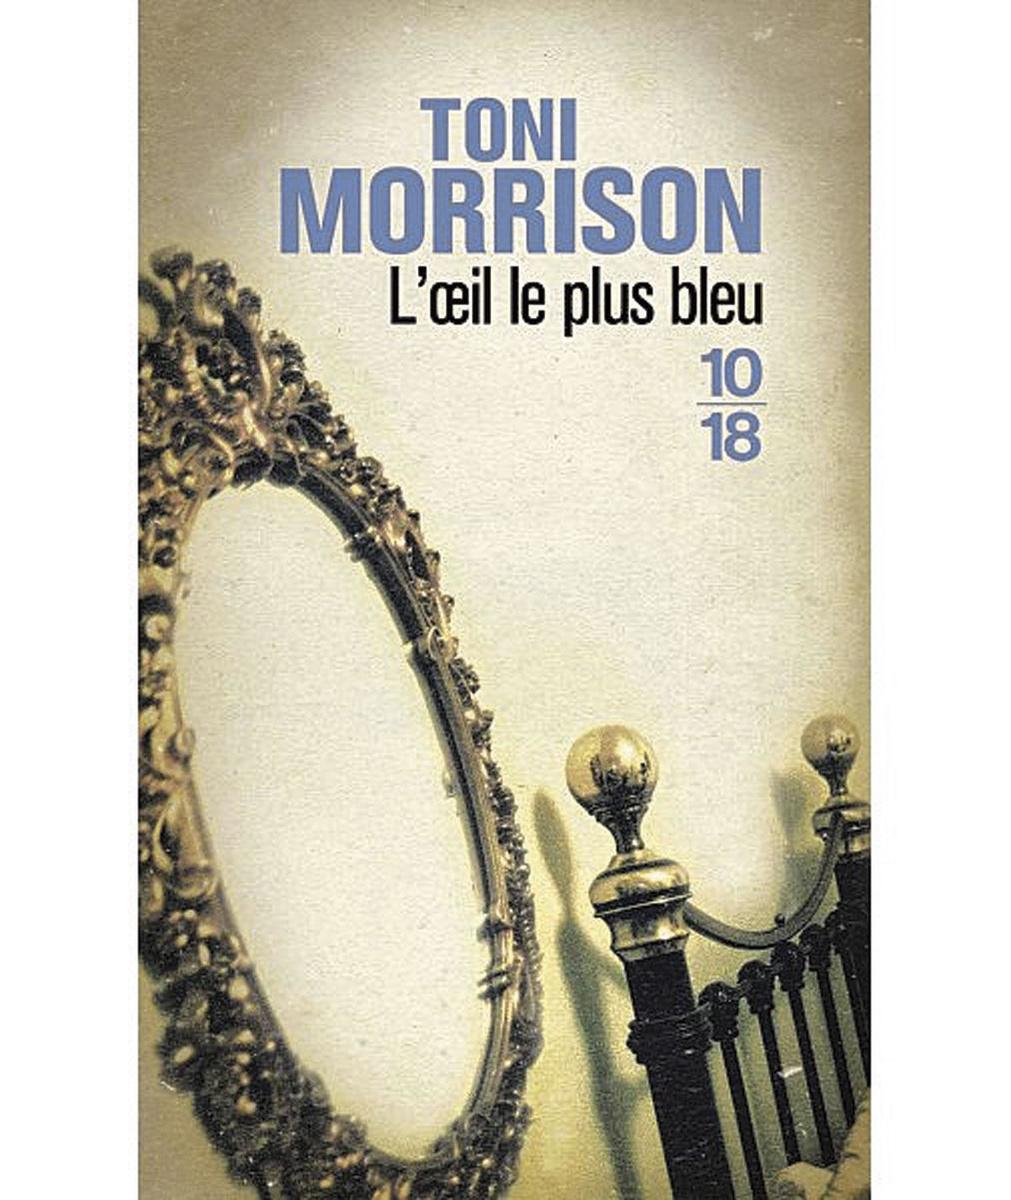 L'oeil le plus bleu, par Toni Morrison,traduit de l'anglais (Etats-Unis) par Jean Guiloineau, éd. 10/18, 219 p.